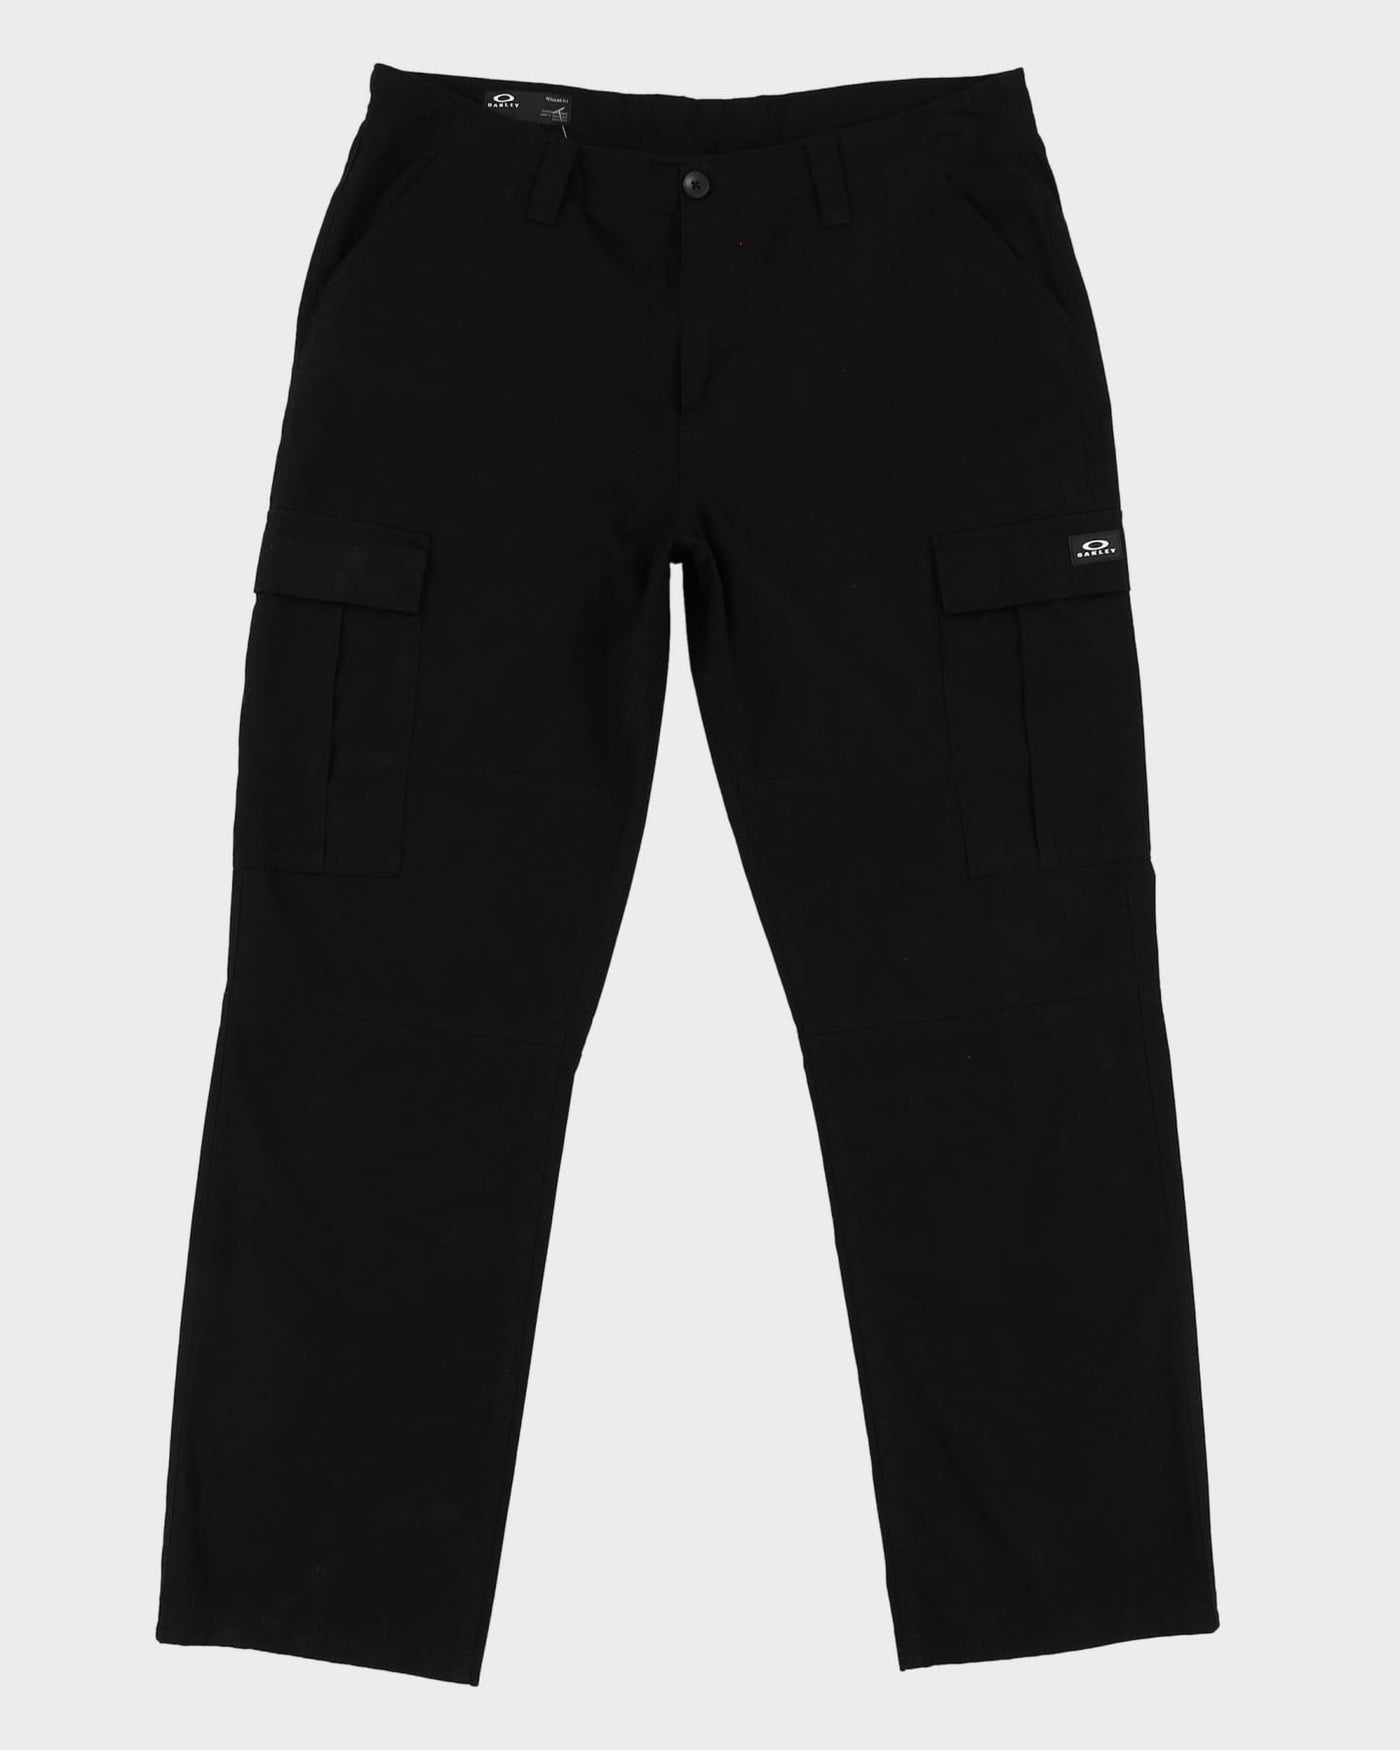 Oakley Black Cargo Trousers - W36 L31